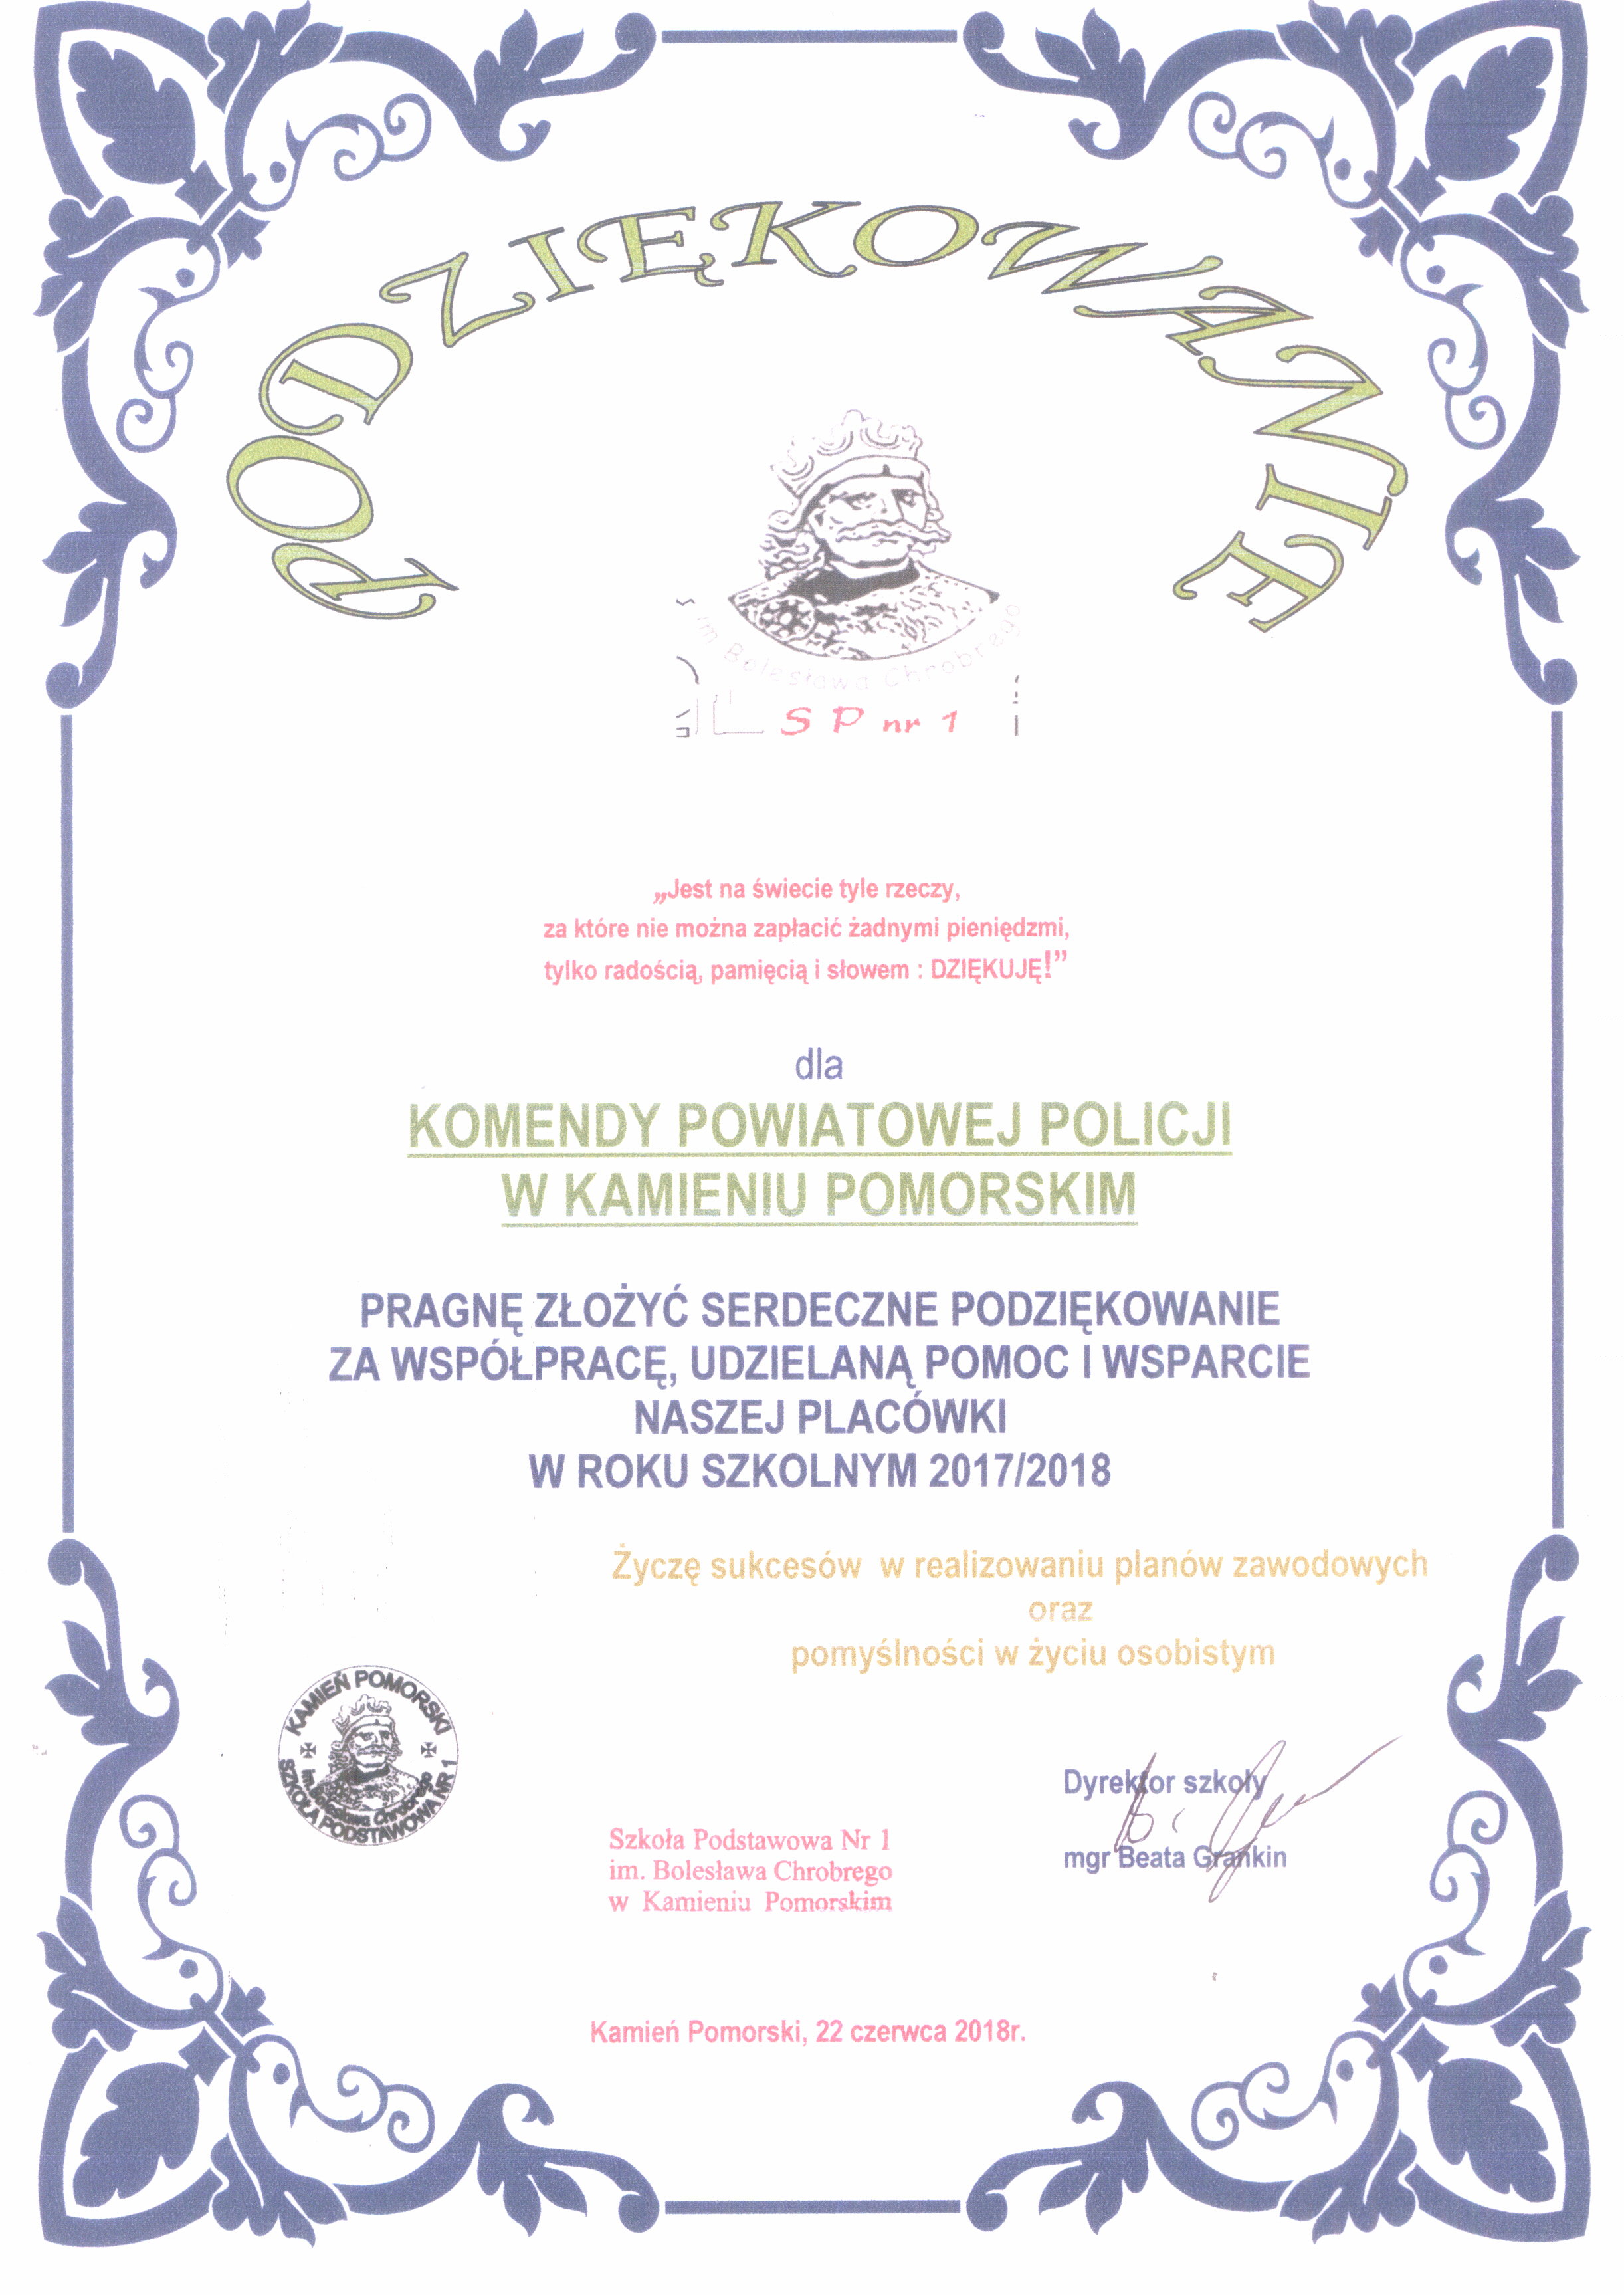 Podziękowania dla Komendy Powiatowej Policji w Kamieniu Pomorskim